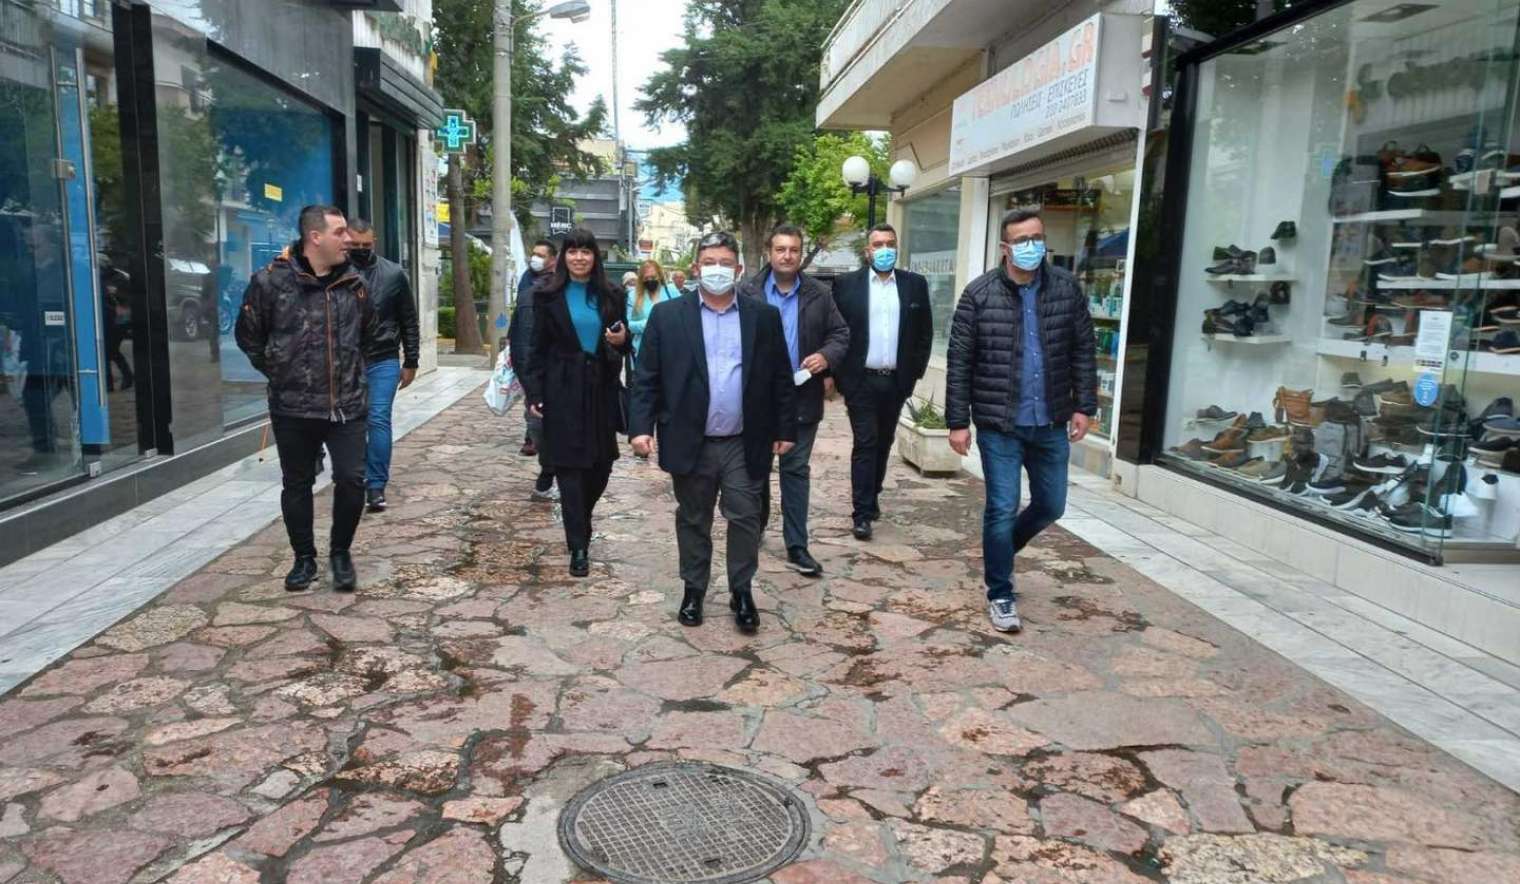 Νομικά πρόσωπα και άλλες δομές του Δήμου επισκέφθηκαν ο Δήμαρχος Αχαρνών και οι συνεργάτες του